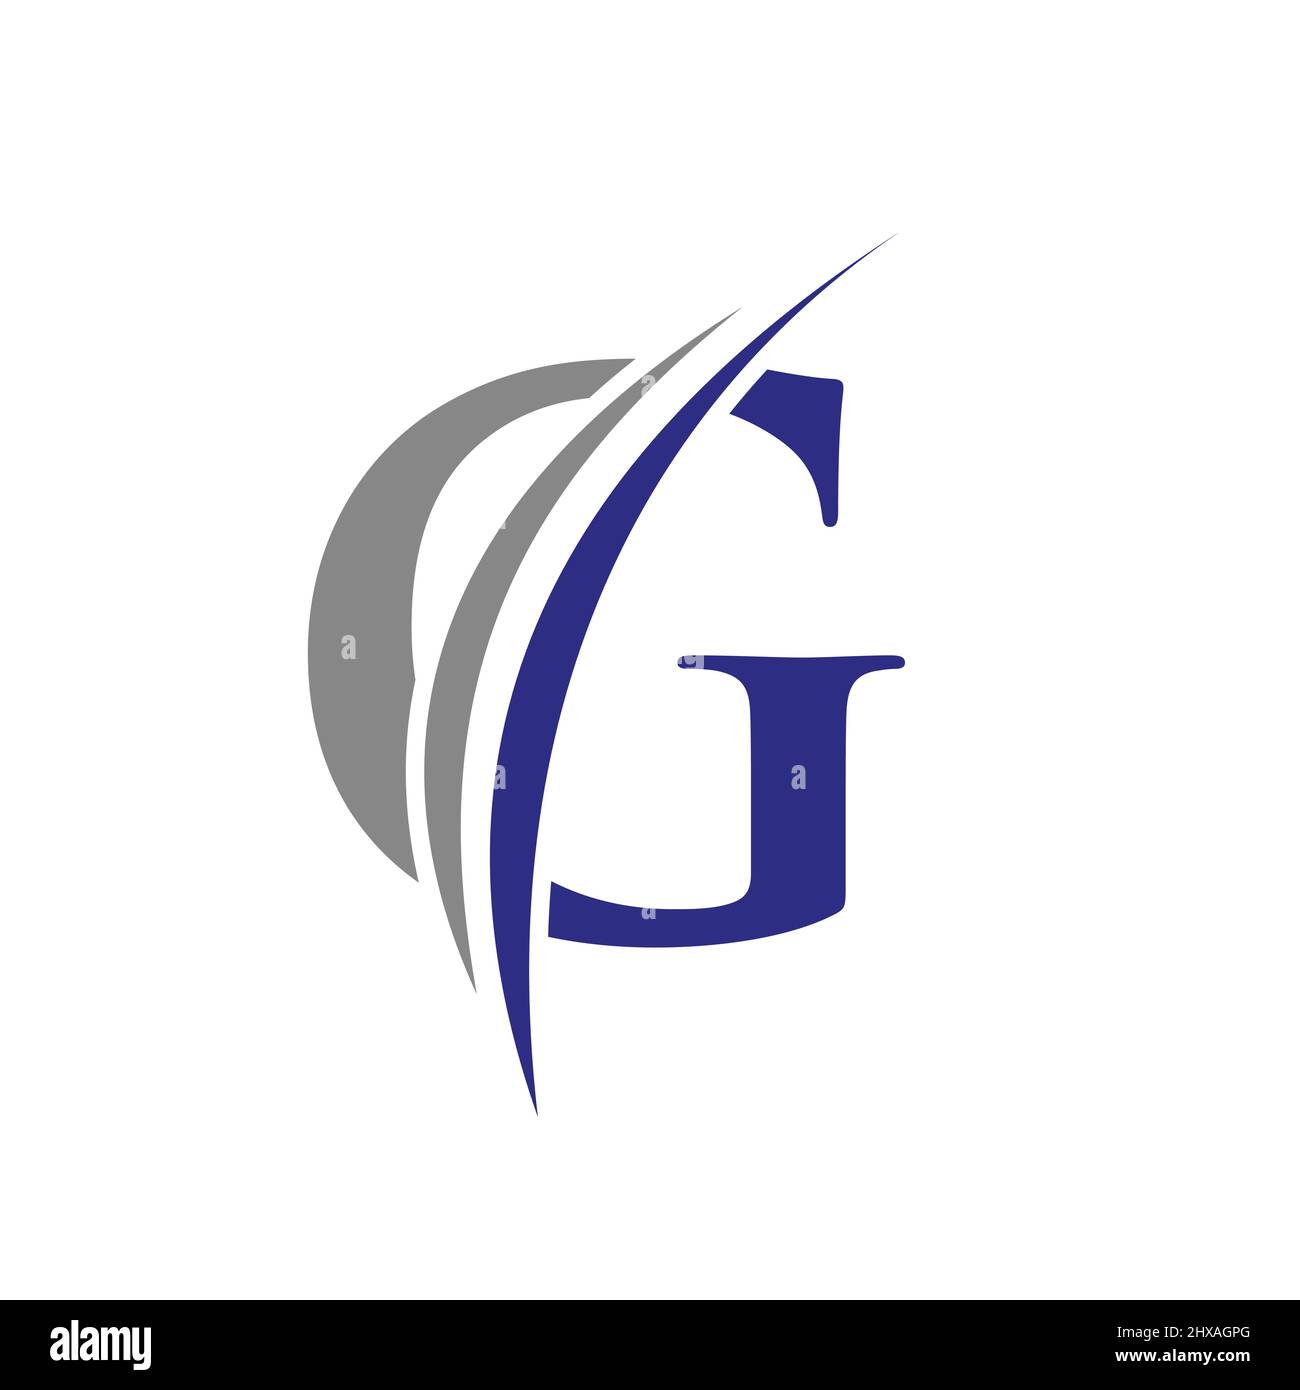 Ursprüngliches Logo mit G-Buchstaben im Vektorformat. Abbildung des G-Logos Stock Vektor